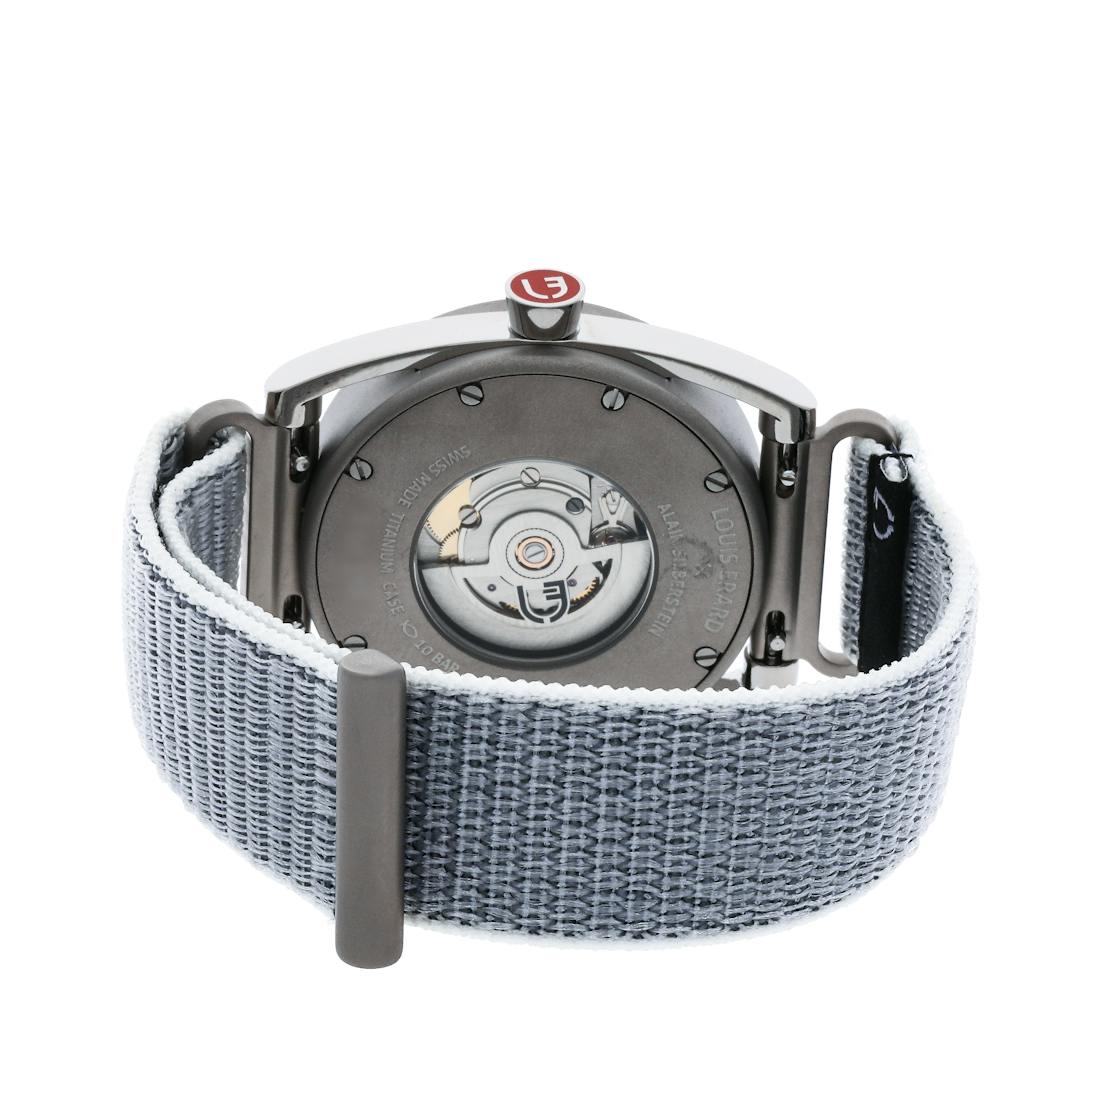 Louis Erard Men's x Alain Silberstein Excellense Le REGULATEUR Limited Edition Watch in Grey, Titanium, Automatic | Govberg 85358TT03.BTT83